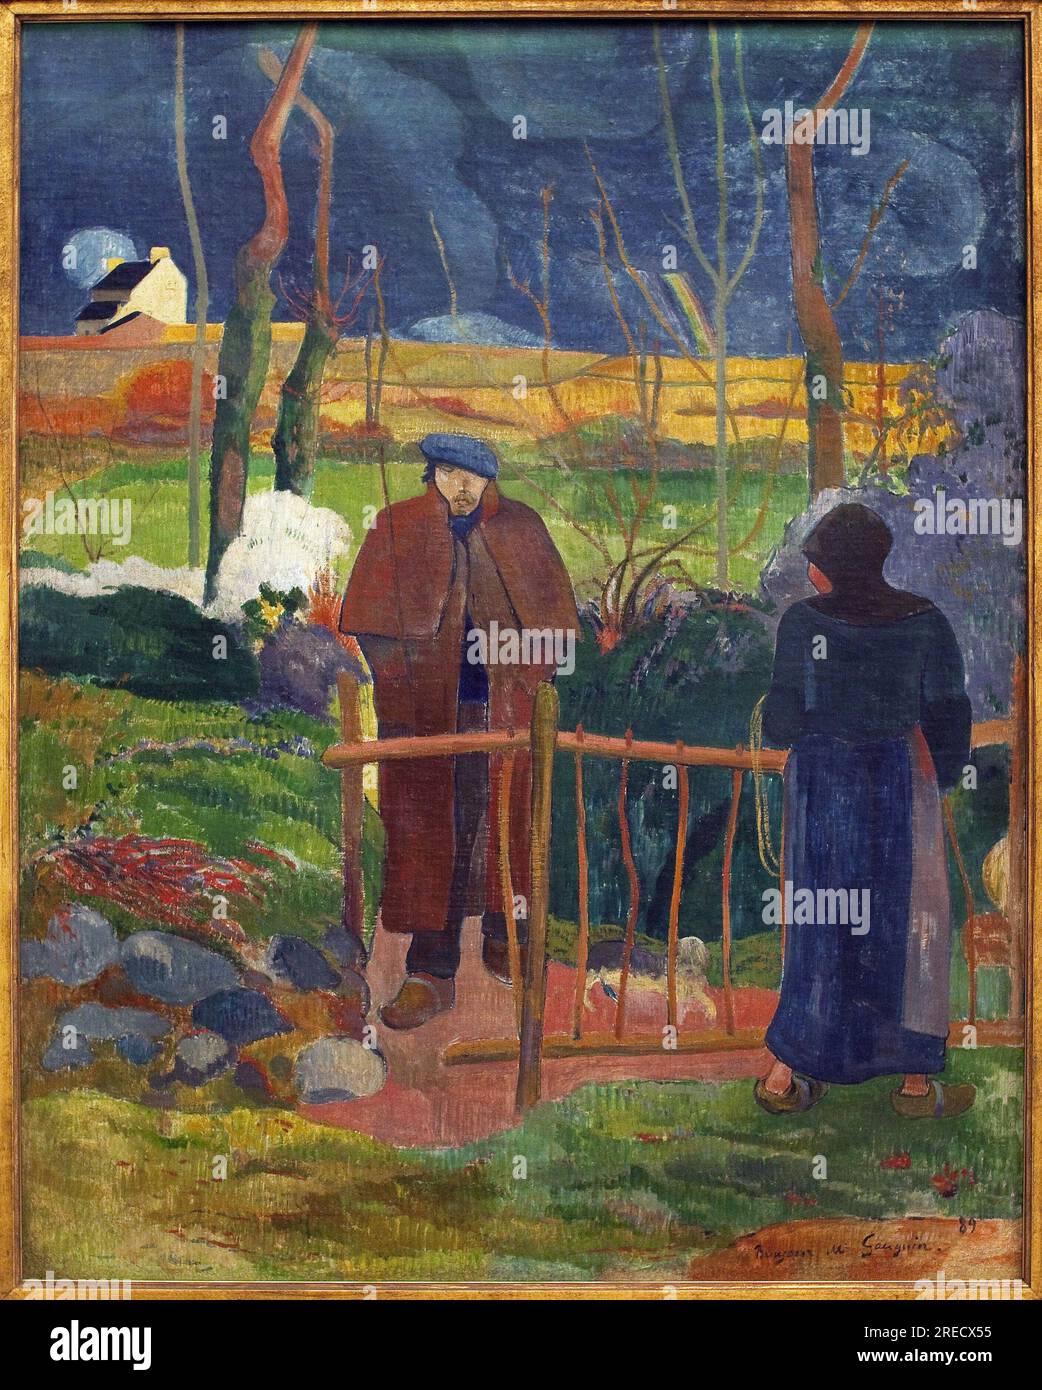 Bonjour, Monsieur Gauguin. Le tableau a ete execute lors d'un séjour a le Pouldu (Finistère), en automne 1889, avec plusieurs autres artistes, Gauguin a decore la salle a manger de Mademoiselle Henry. Cet autoportrait constitue le panneau inférieur de la porte, ce tableau en est une version agrandie et une allusion au tableau de Gustave Courbet (1819-1877), Bonjour Monsieur Courbet (1854). Peinture de Paul Gauguin (1848-1903), huile sur toile, 1889. Art francais, 19e siecle. Palais Veletrzni (palais des foires), Prague (République Tcheque). Banque D'Images